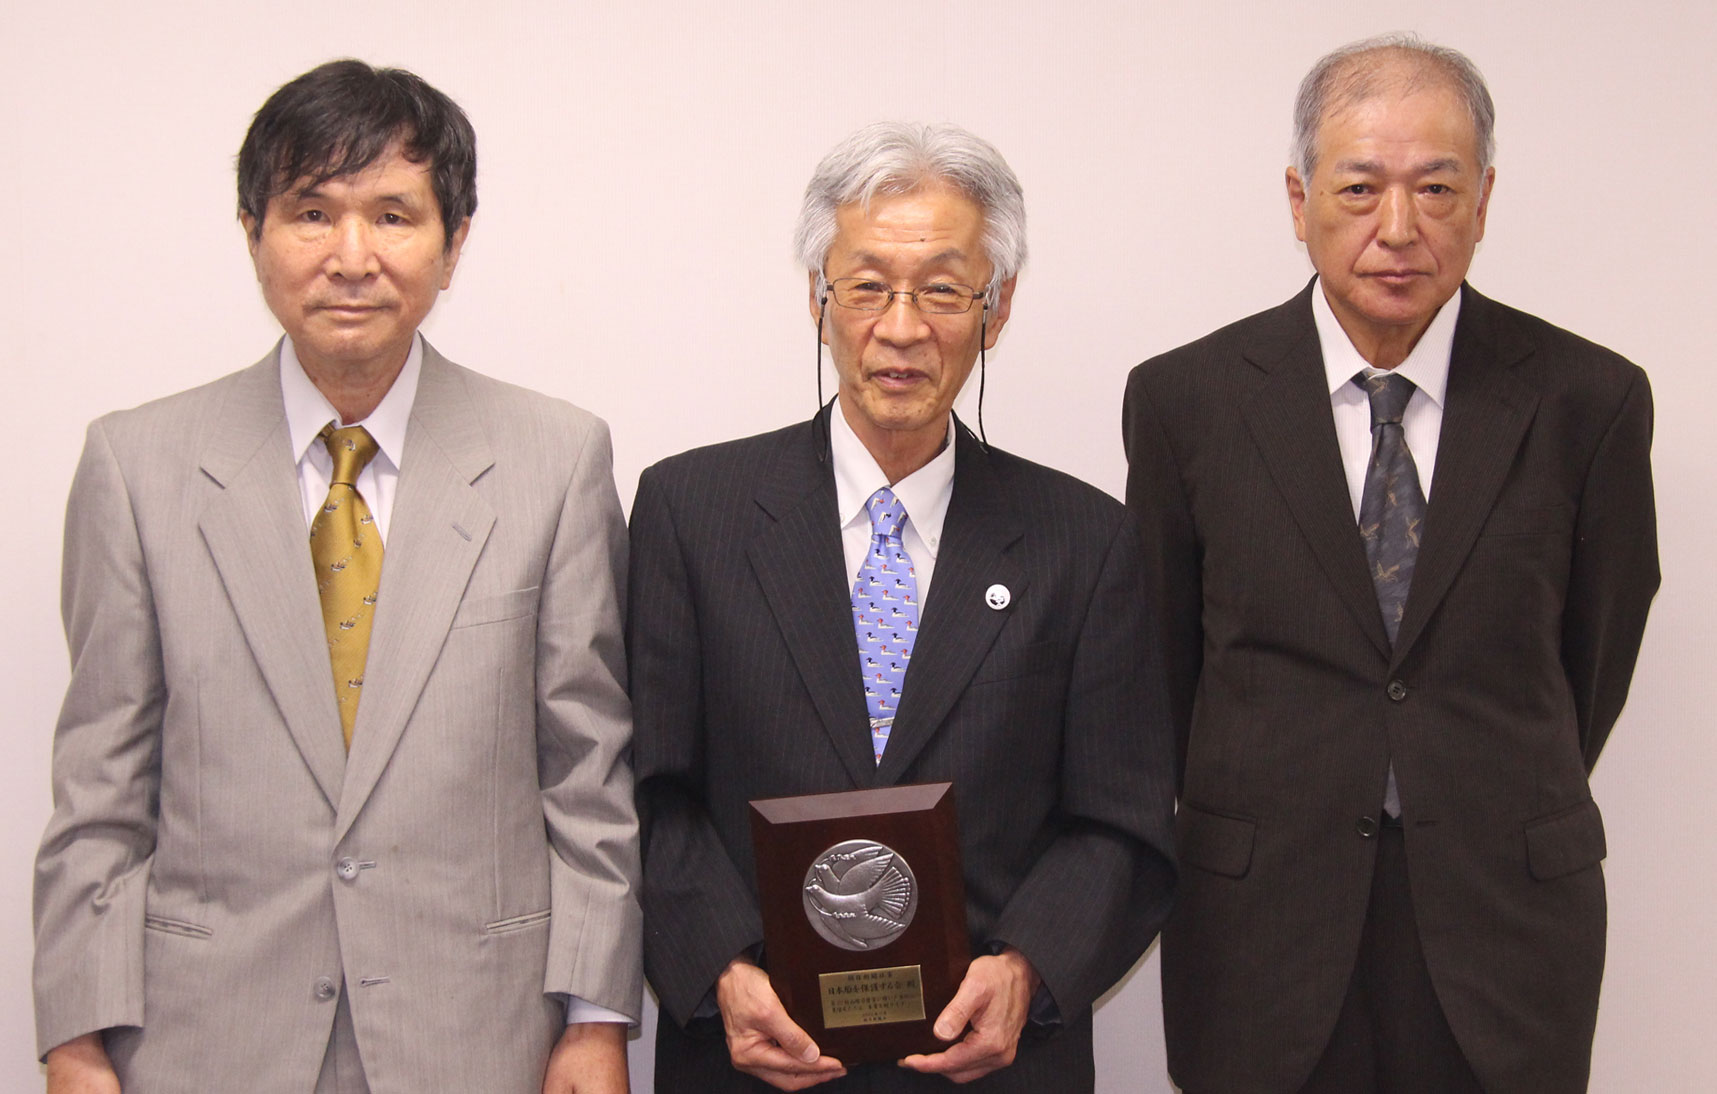 photo of mr.Kurechi, mr.Sabano, mr.Sugawa